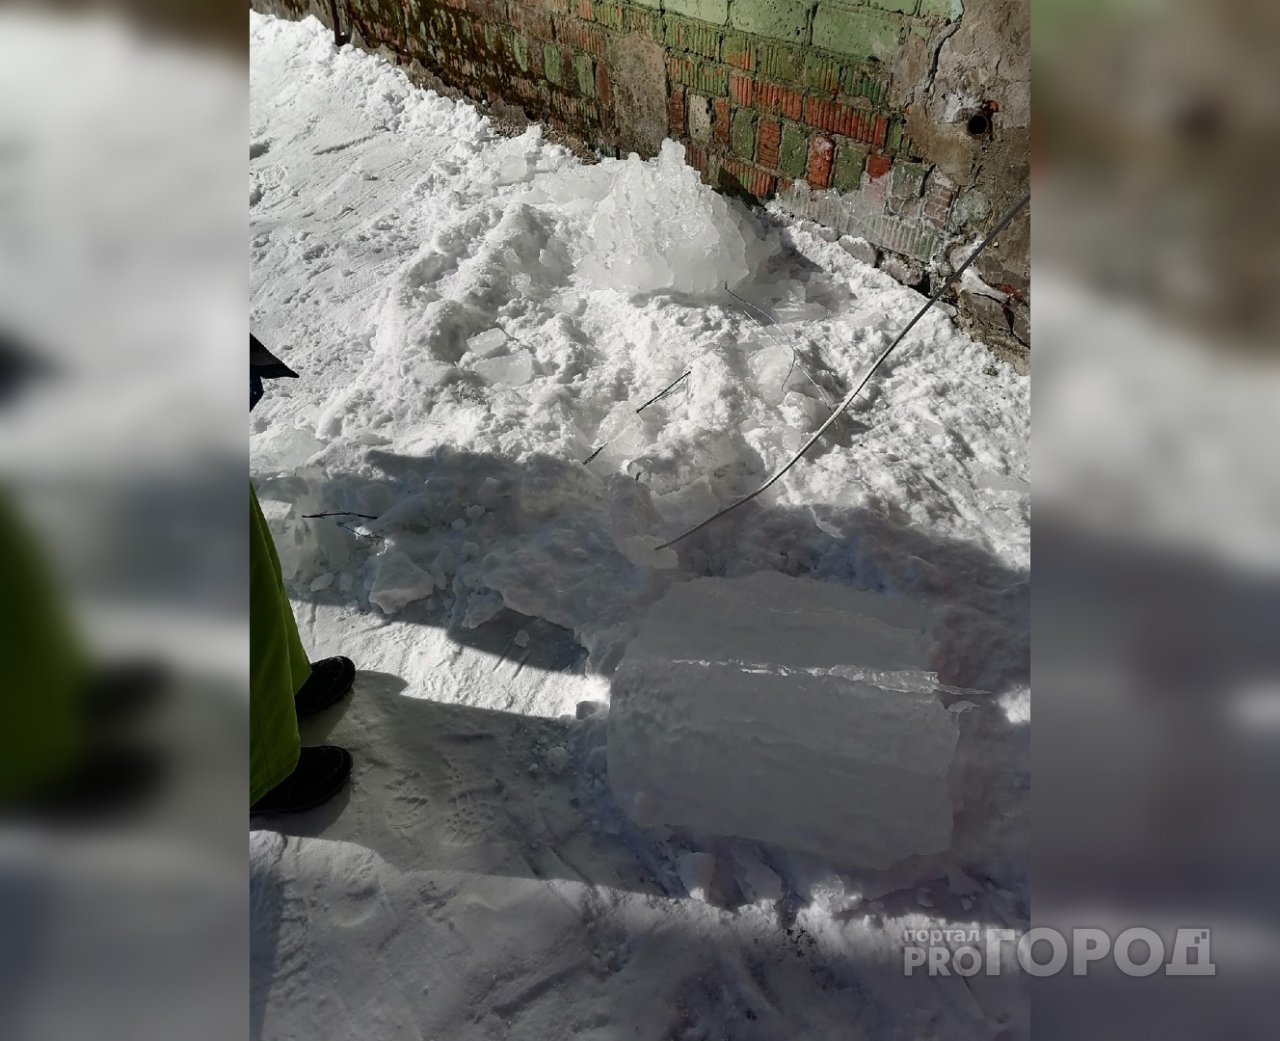 Следователи начали проверку после падения льда на ребенка в Кирово-Чепецке